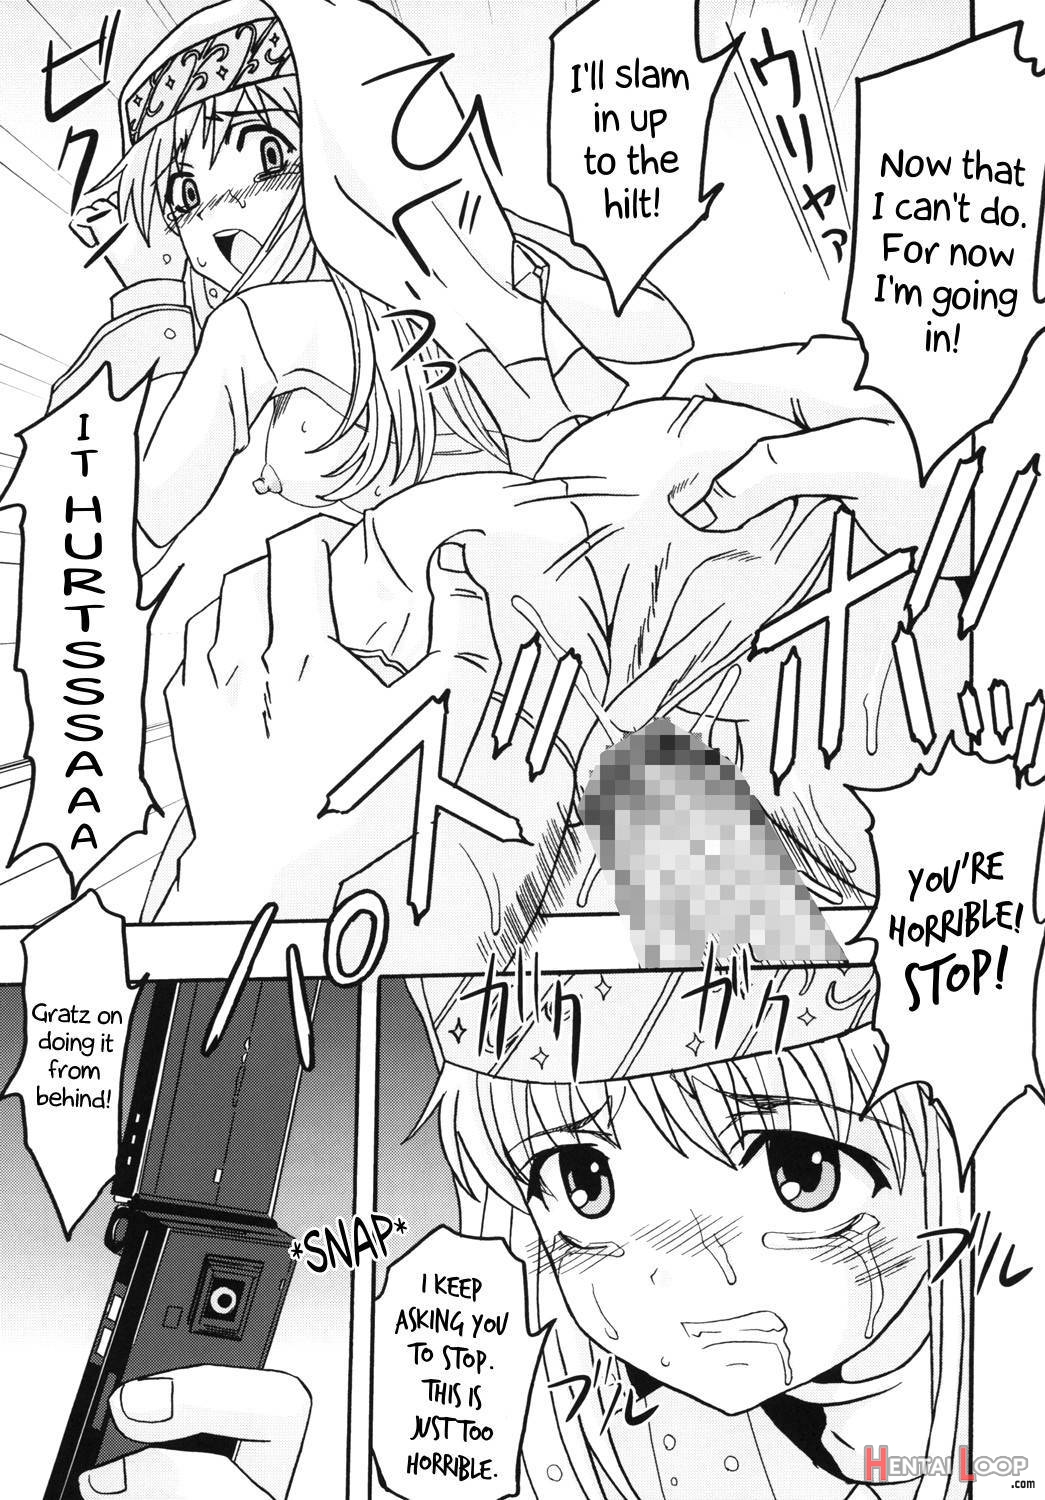 Toaru Otaku no Index #1 page 12